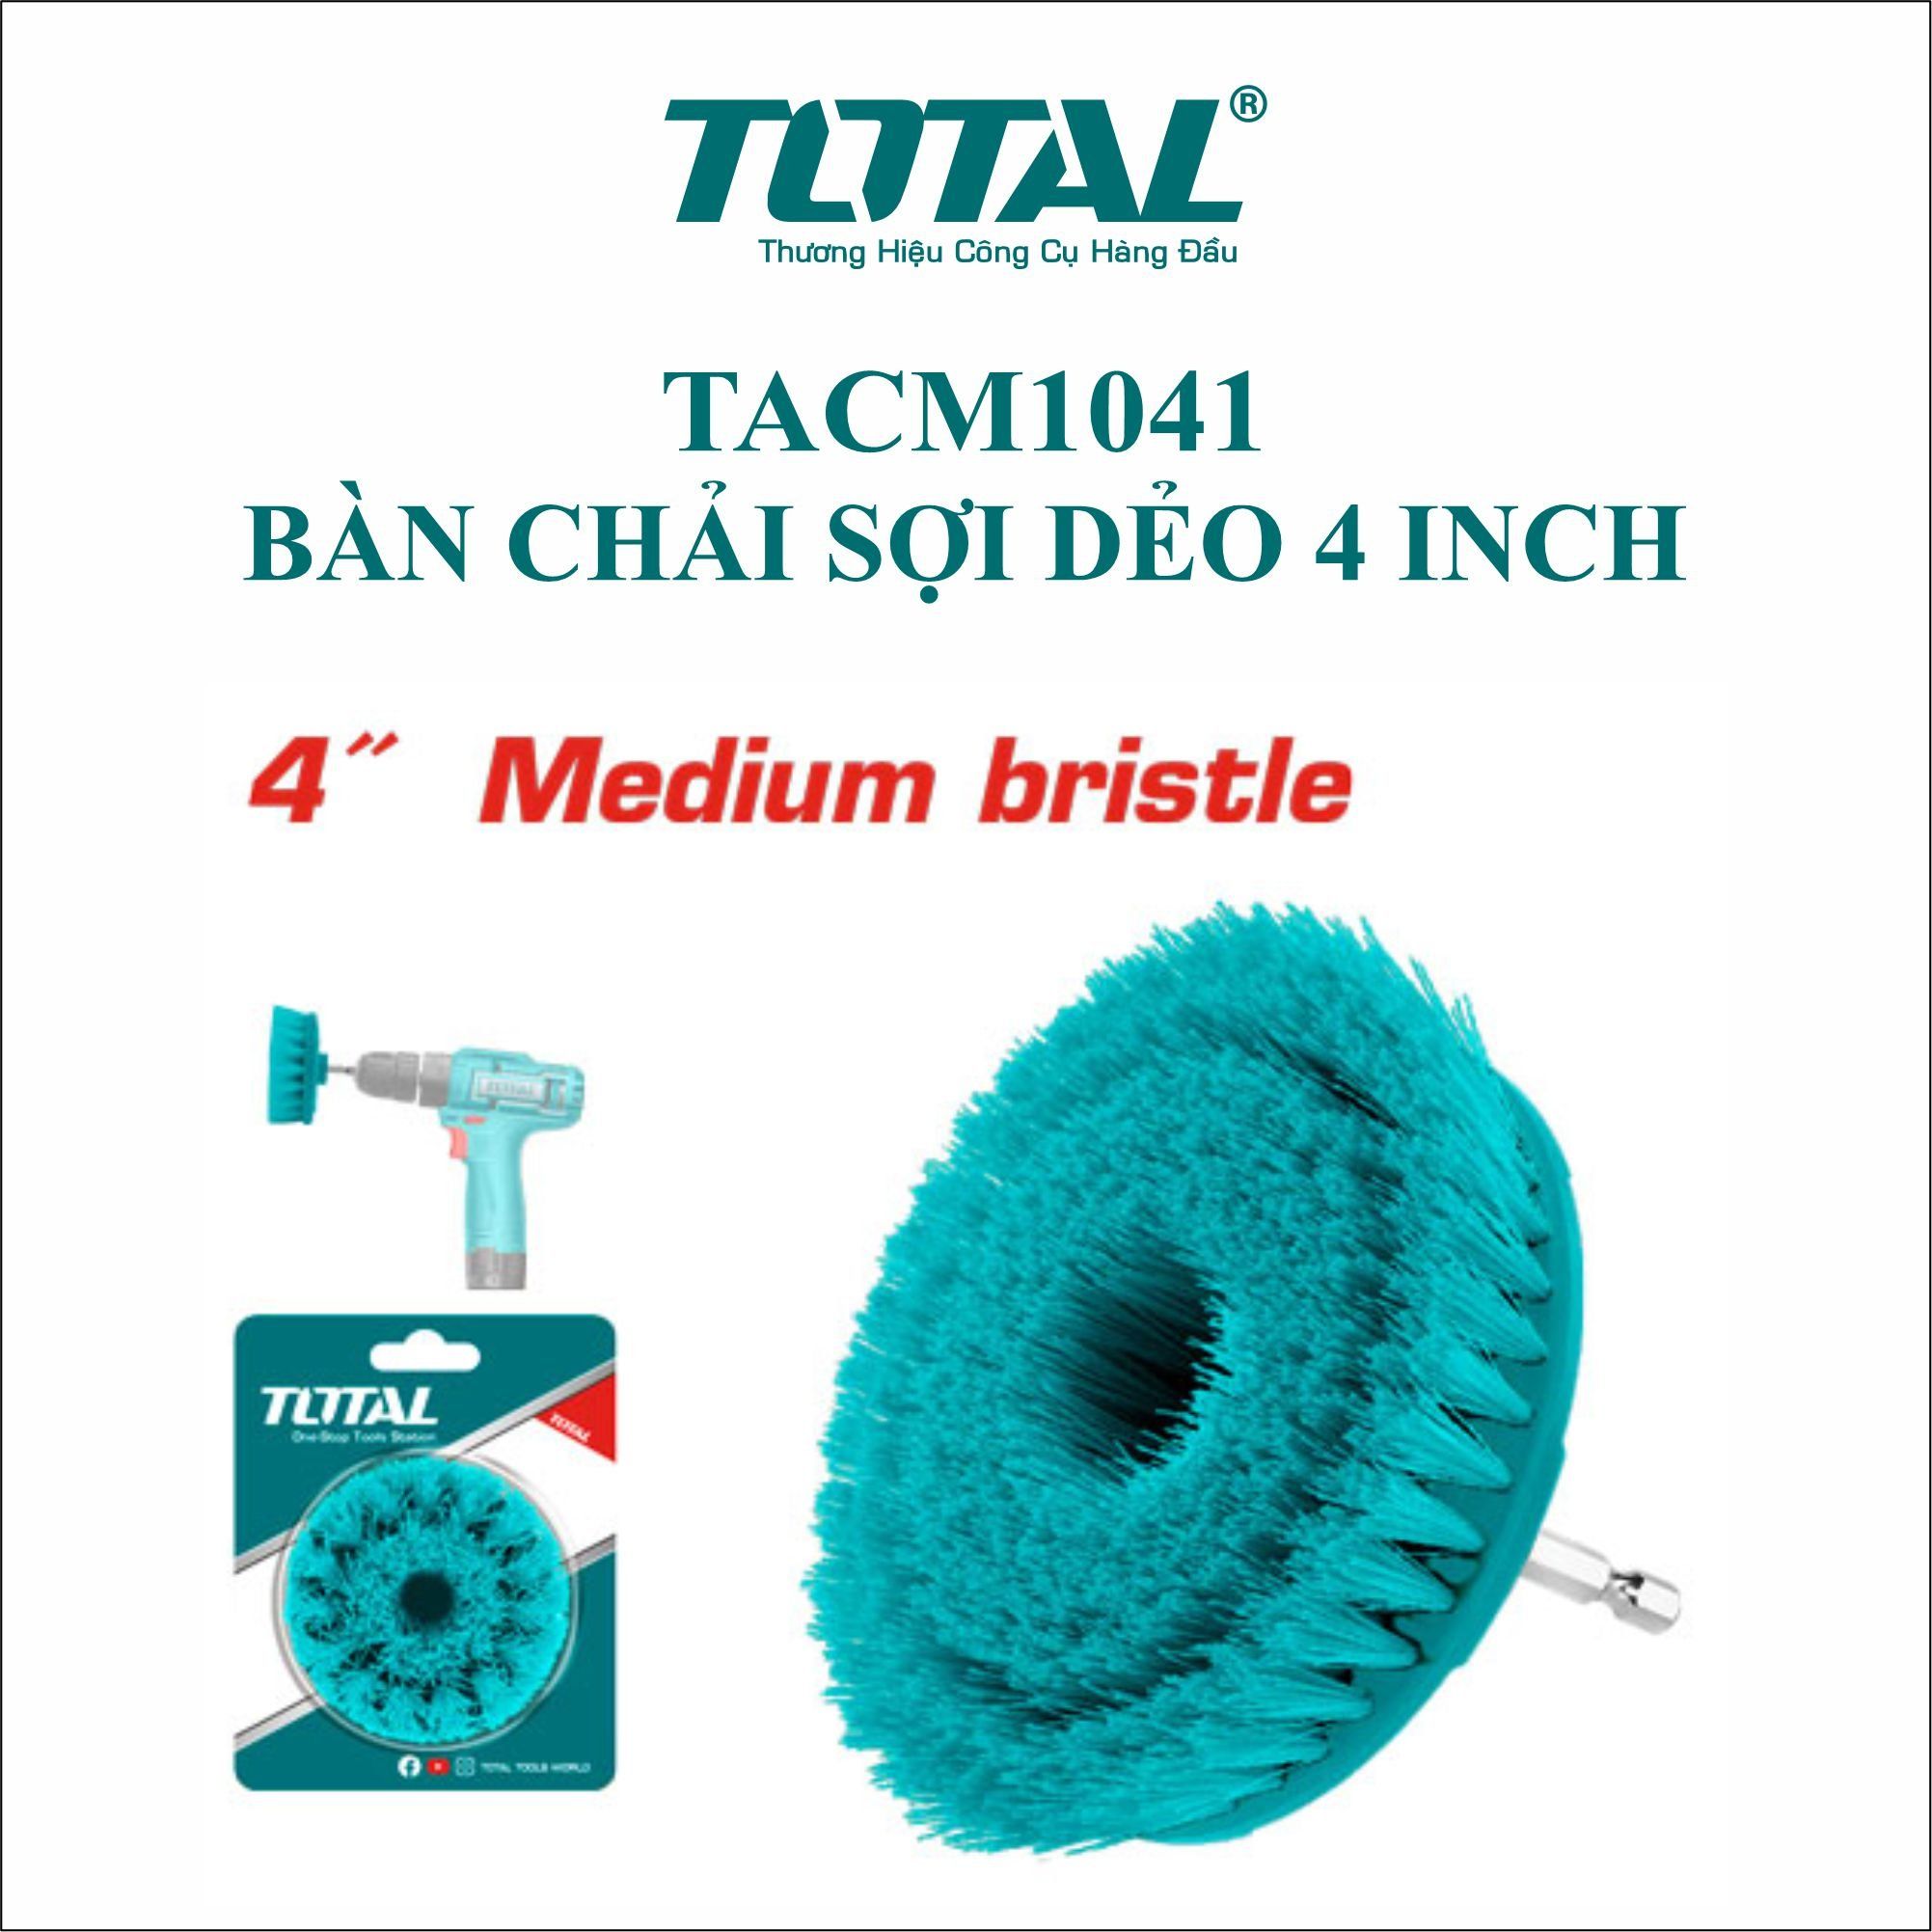  Bàn chải sợi dẻo 4 inch Total TACM1041 